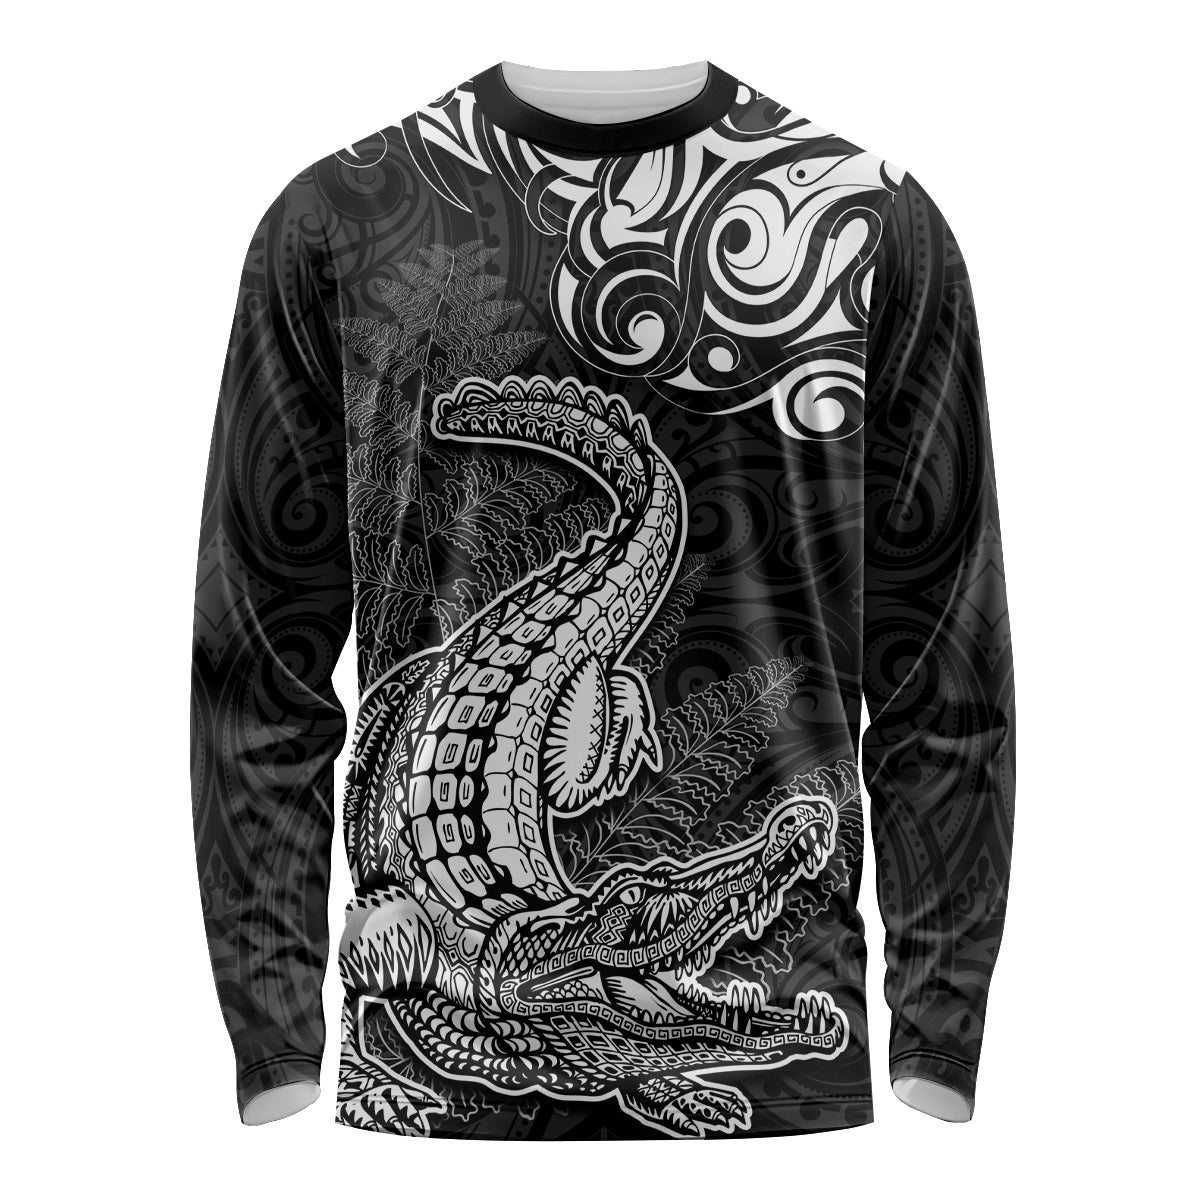 New Zealand Crocodile Tattoo and Fern Long Sleeve Shirt Maori Pattern